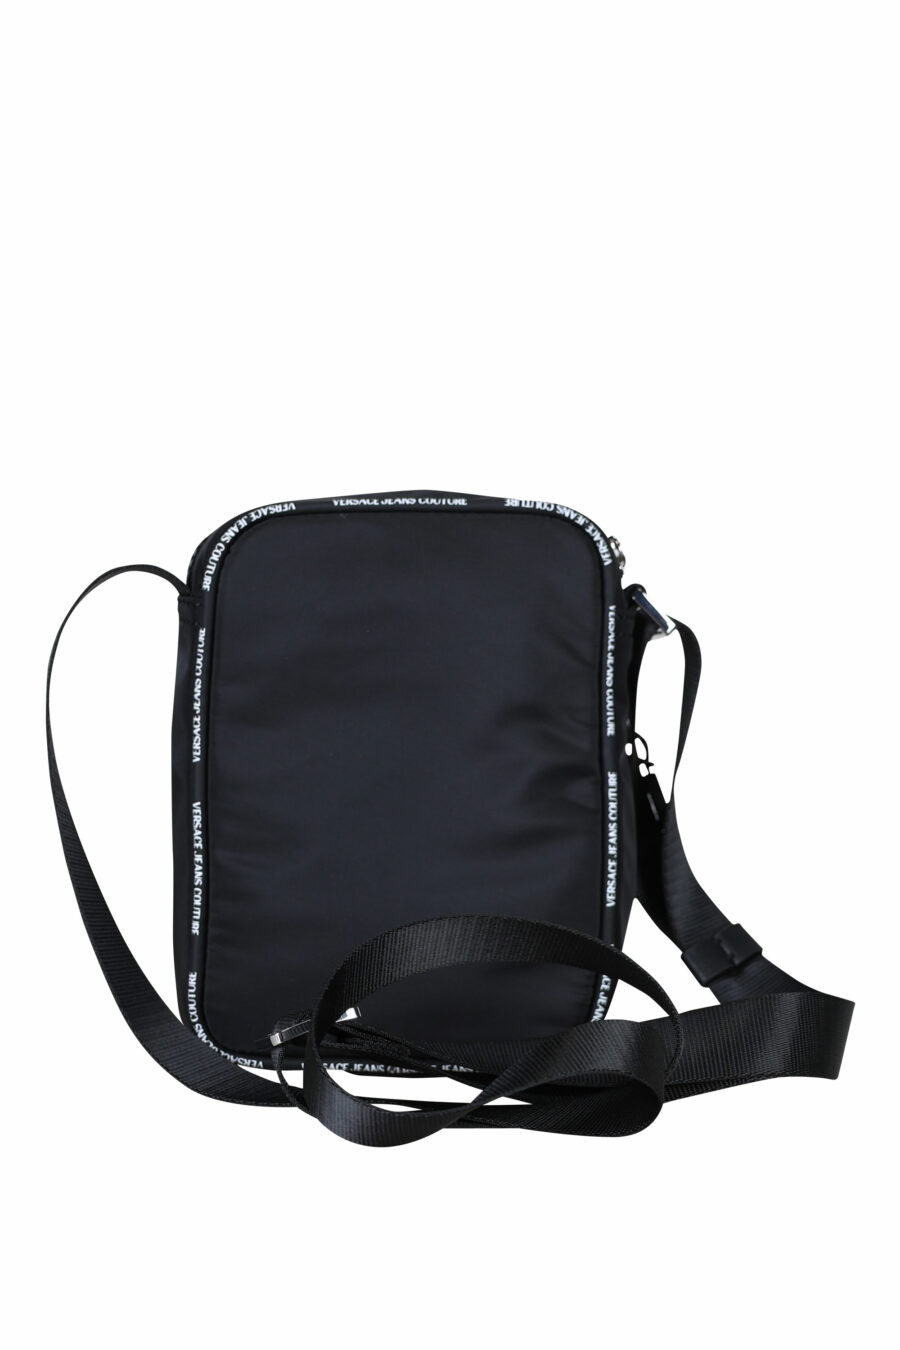 Schwarze Crossbody-Tasche mit weißem Mini-Schriftzug auf Band - 8052019409307 2